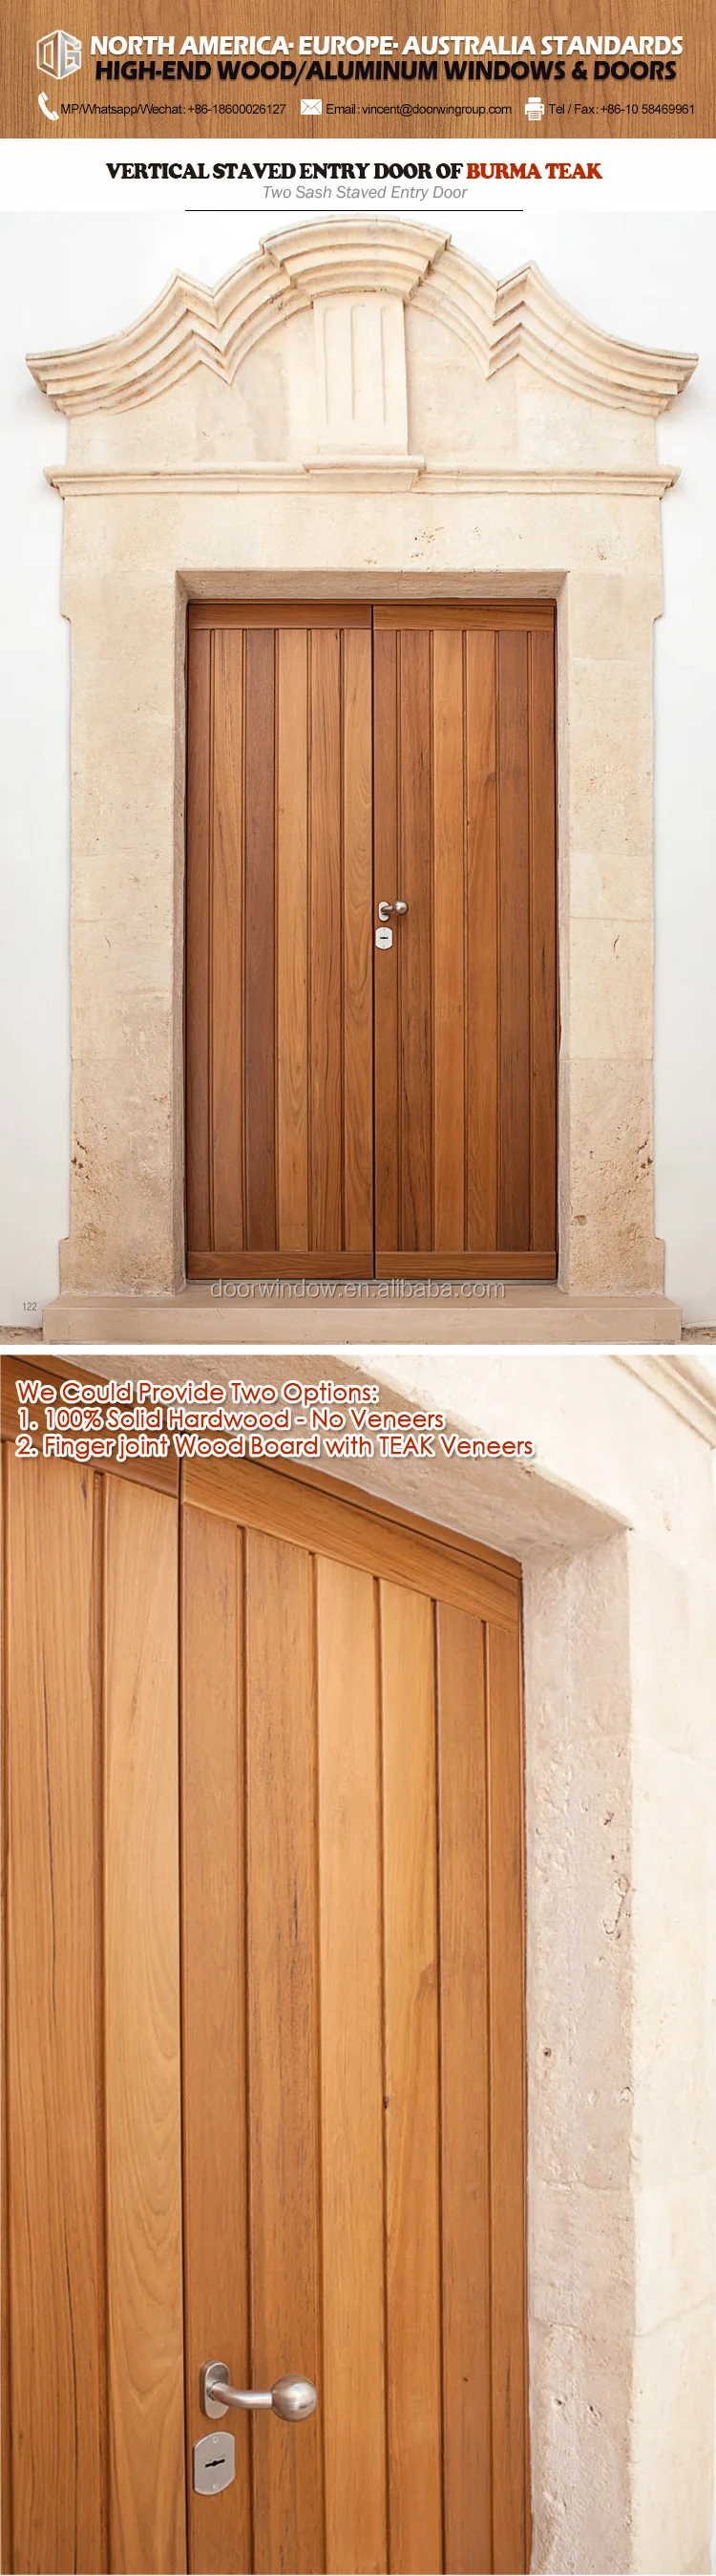 Super September Purchasing 2018 Two Sash Teak Wood Entrance Door Custom Wooden House Door